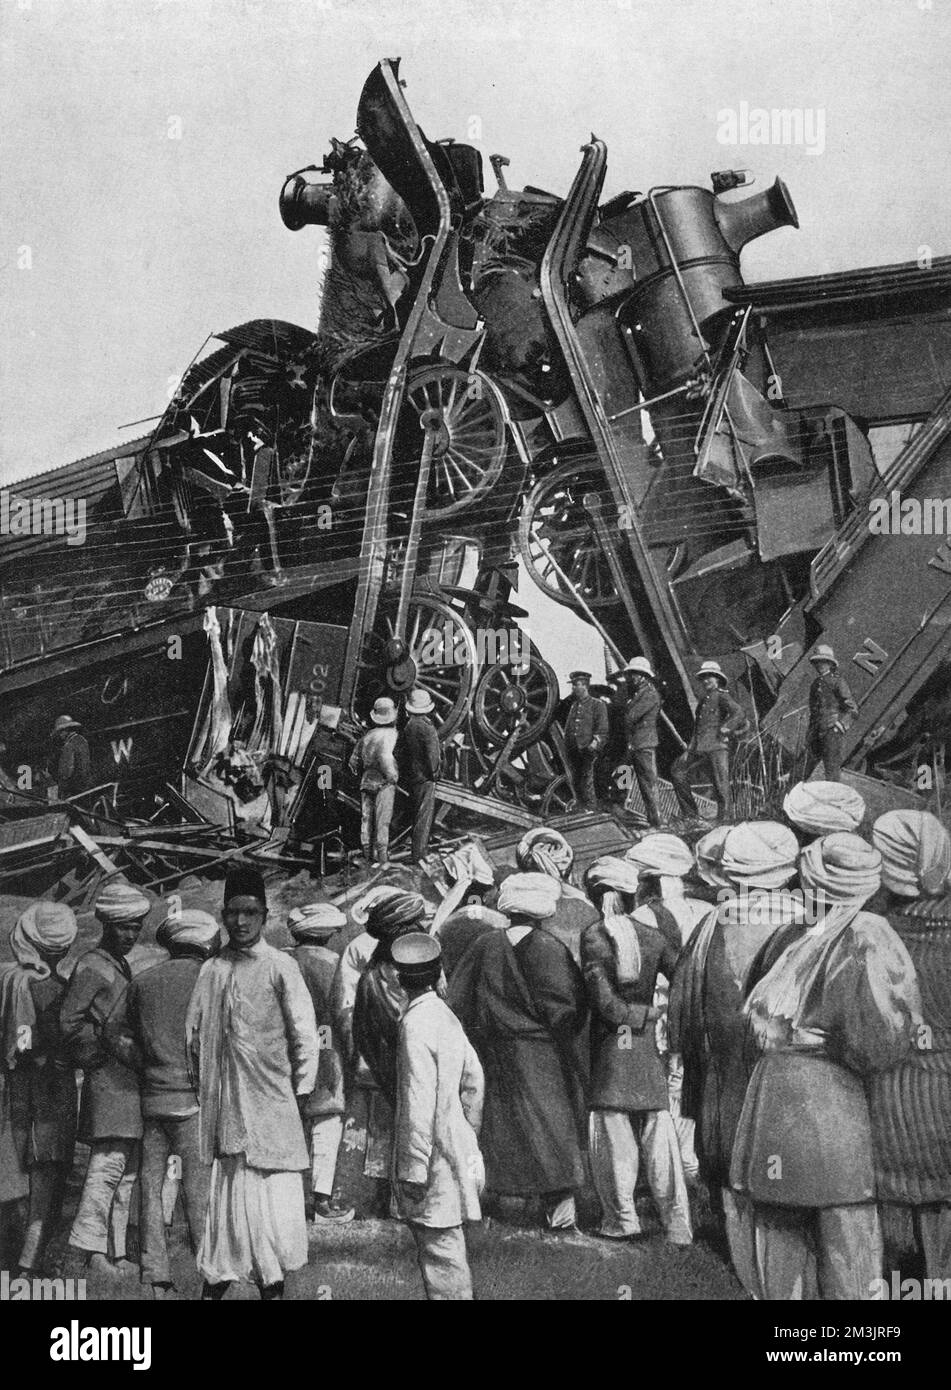 Ein dramatischer Anblick, nachdem zwei Triebwerke in der Nähe von Ludhiana, Indien, kollidierten, was 20 Todesopfer zur Folge hatte. Datum: 1908 Stockfoto